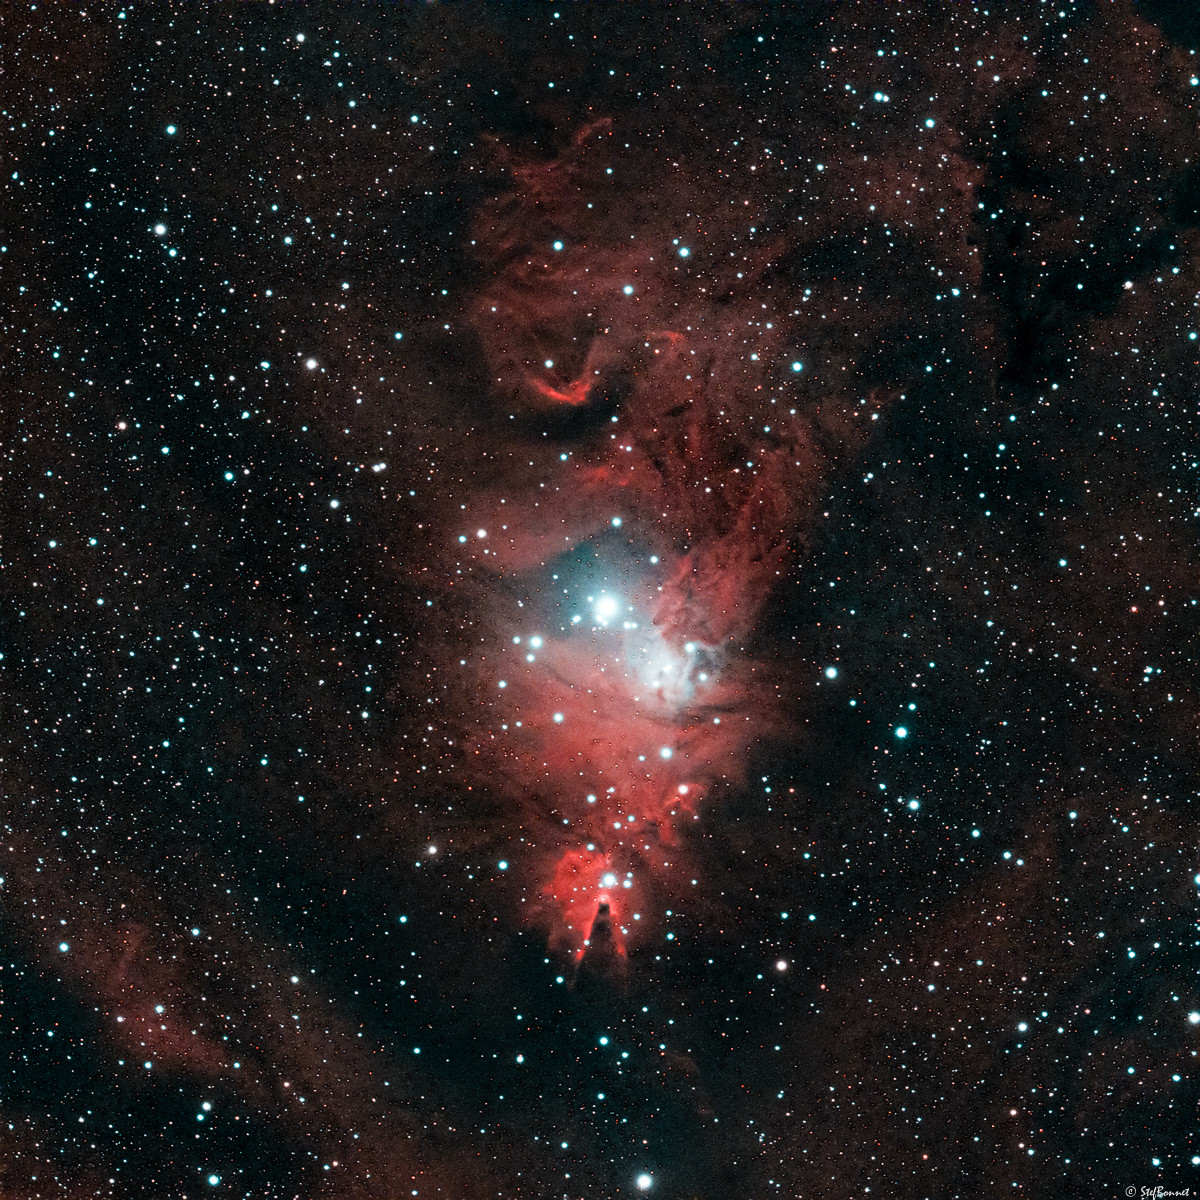 61f6b51feee36_NGC2264Cne-FlouGauss04-StarRed-Web.jpg.d115d72a05e260a6e51cc8e8040afc8d.jpg